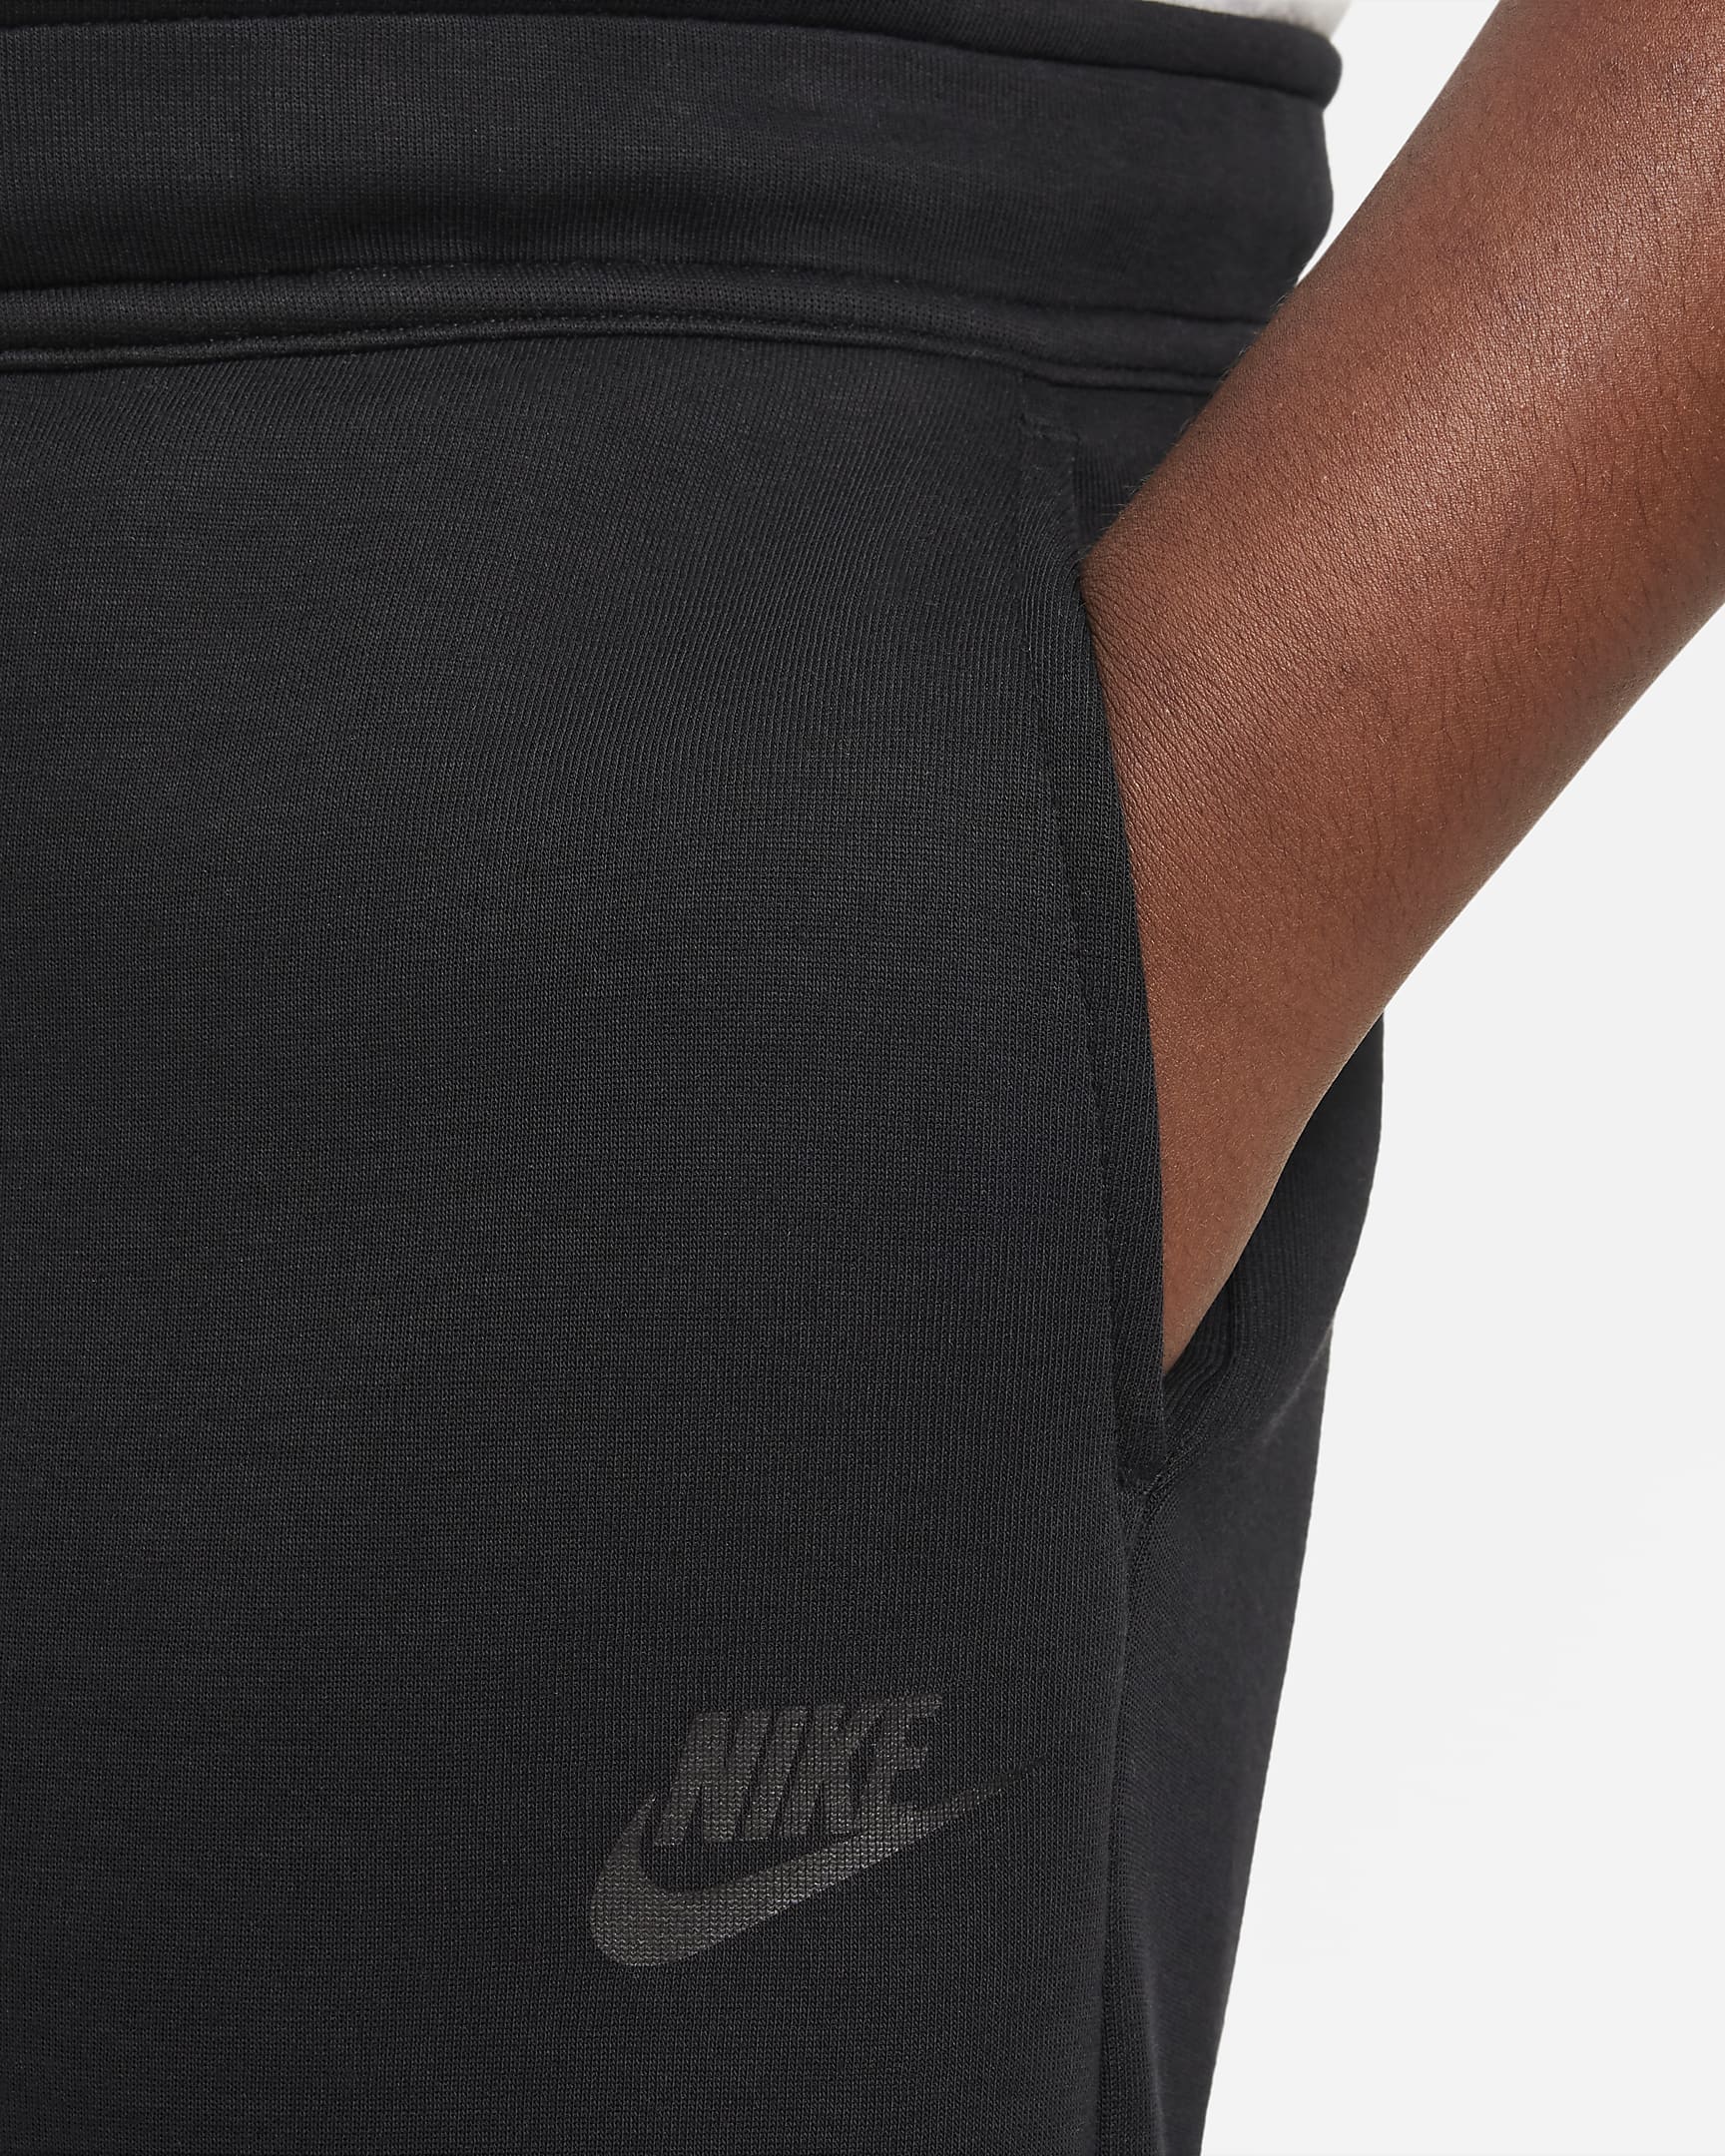 Nike Sportswear Tech Fleece Big Kids' (Boys') Shorts (Extended Size ...